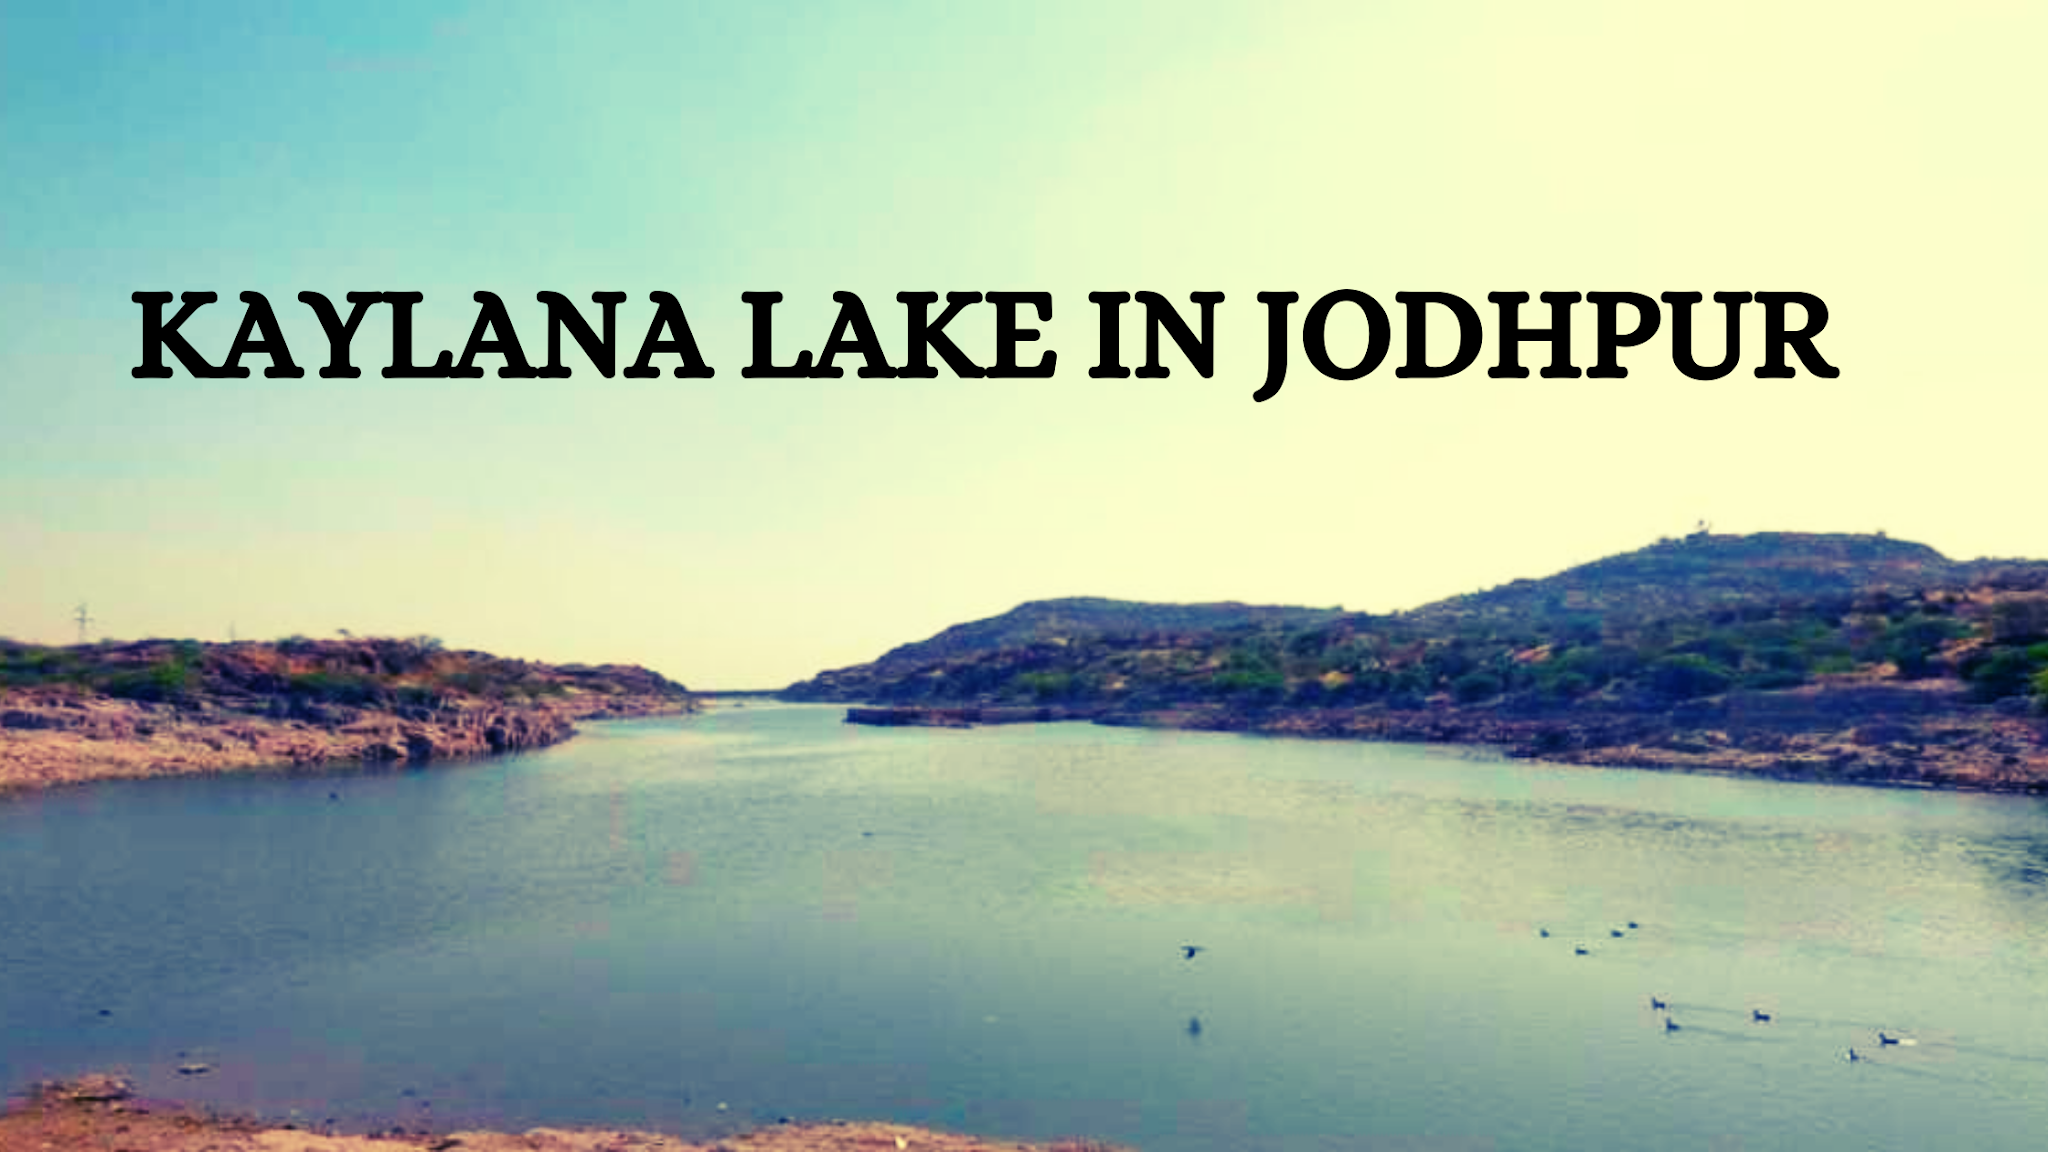 Kaylana Lake in Jodhpur